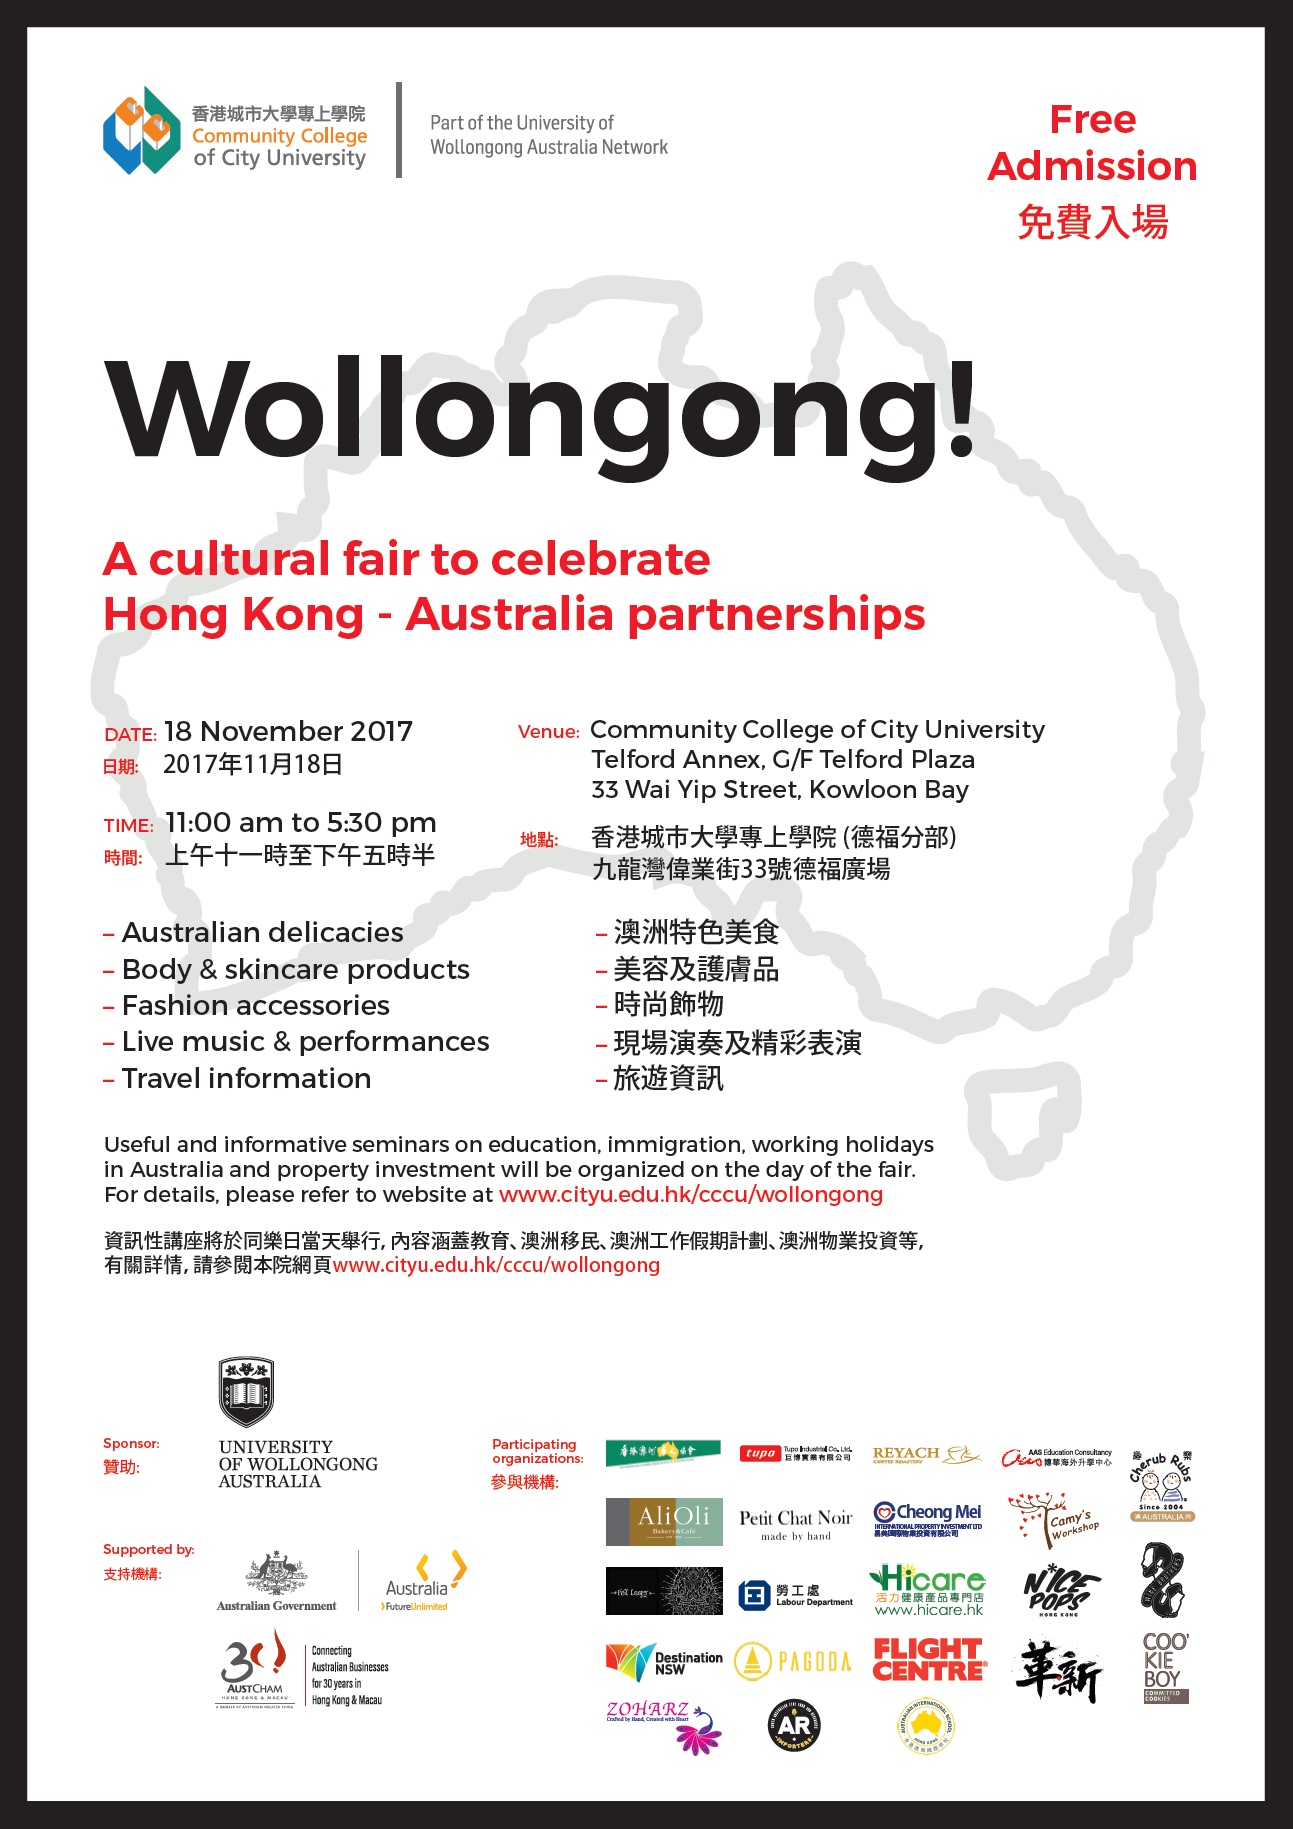 香港城市大学专上学院「Wollongong!」博览会 - 澳洲工作假期讲座图片1